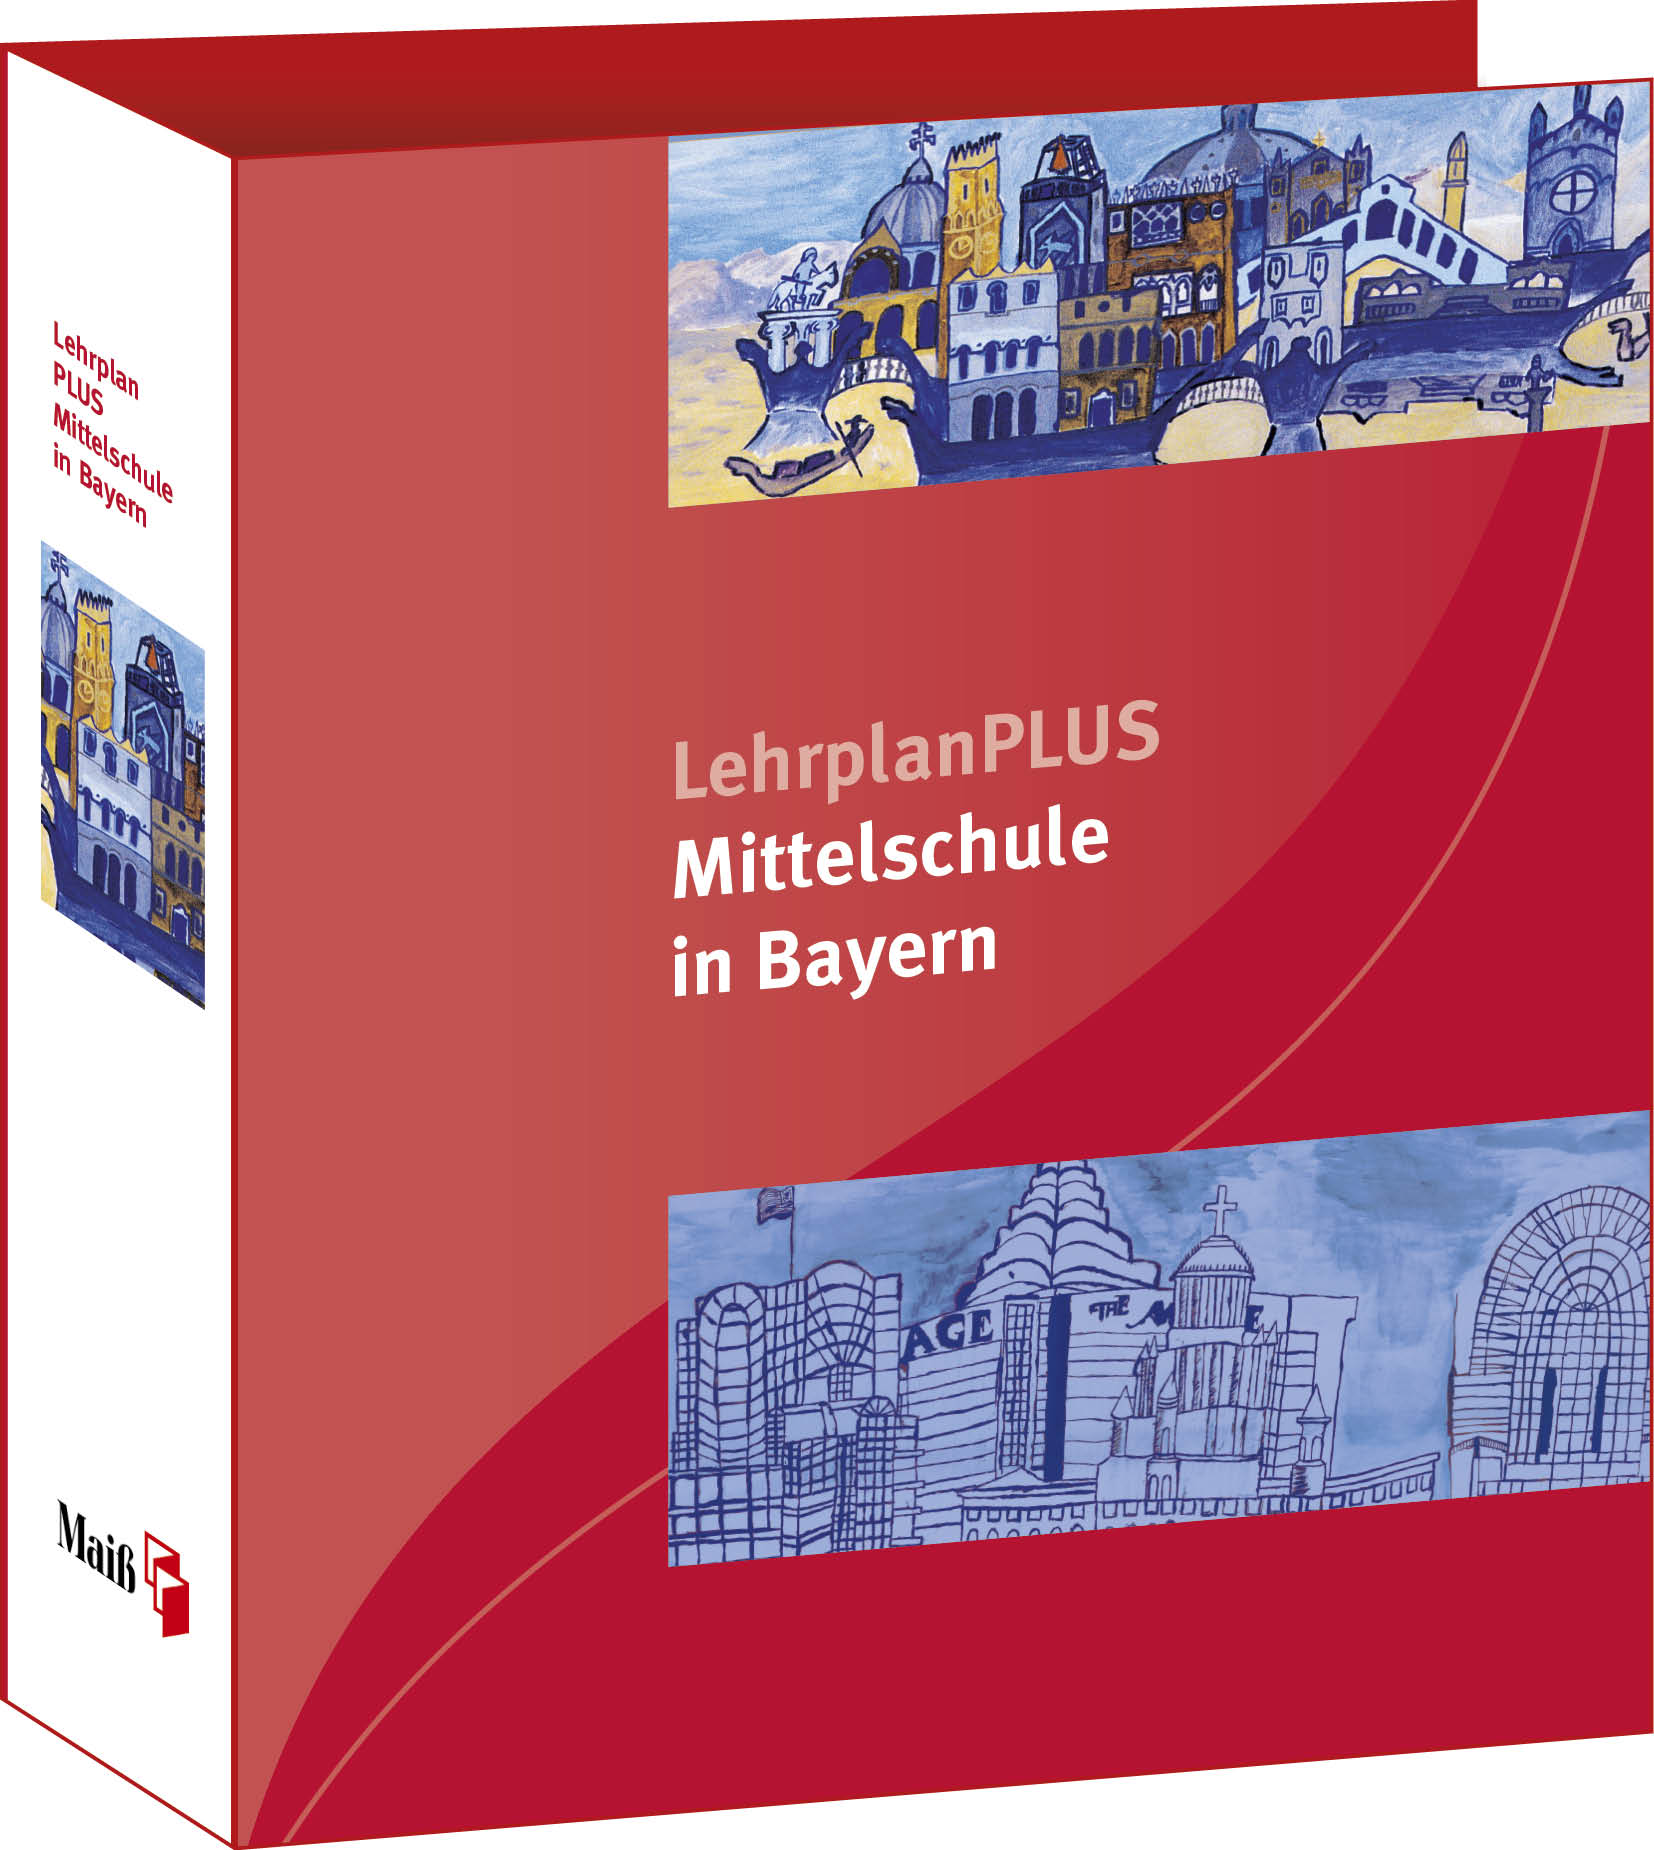 LehrplanPLUS für die bayer. Mittelschule Loseblatt-Gesamtausgabe